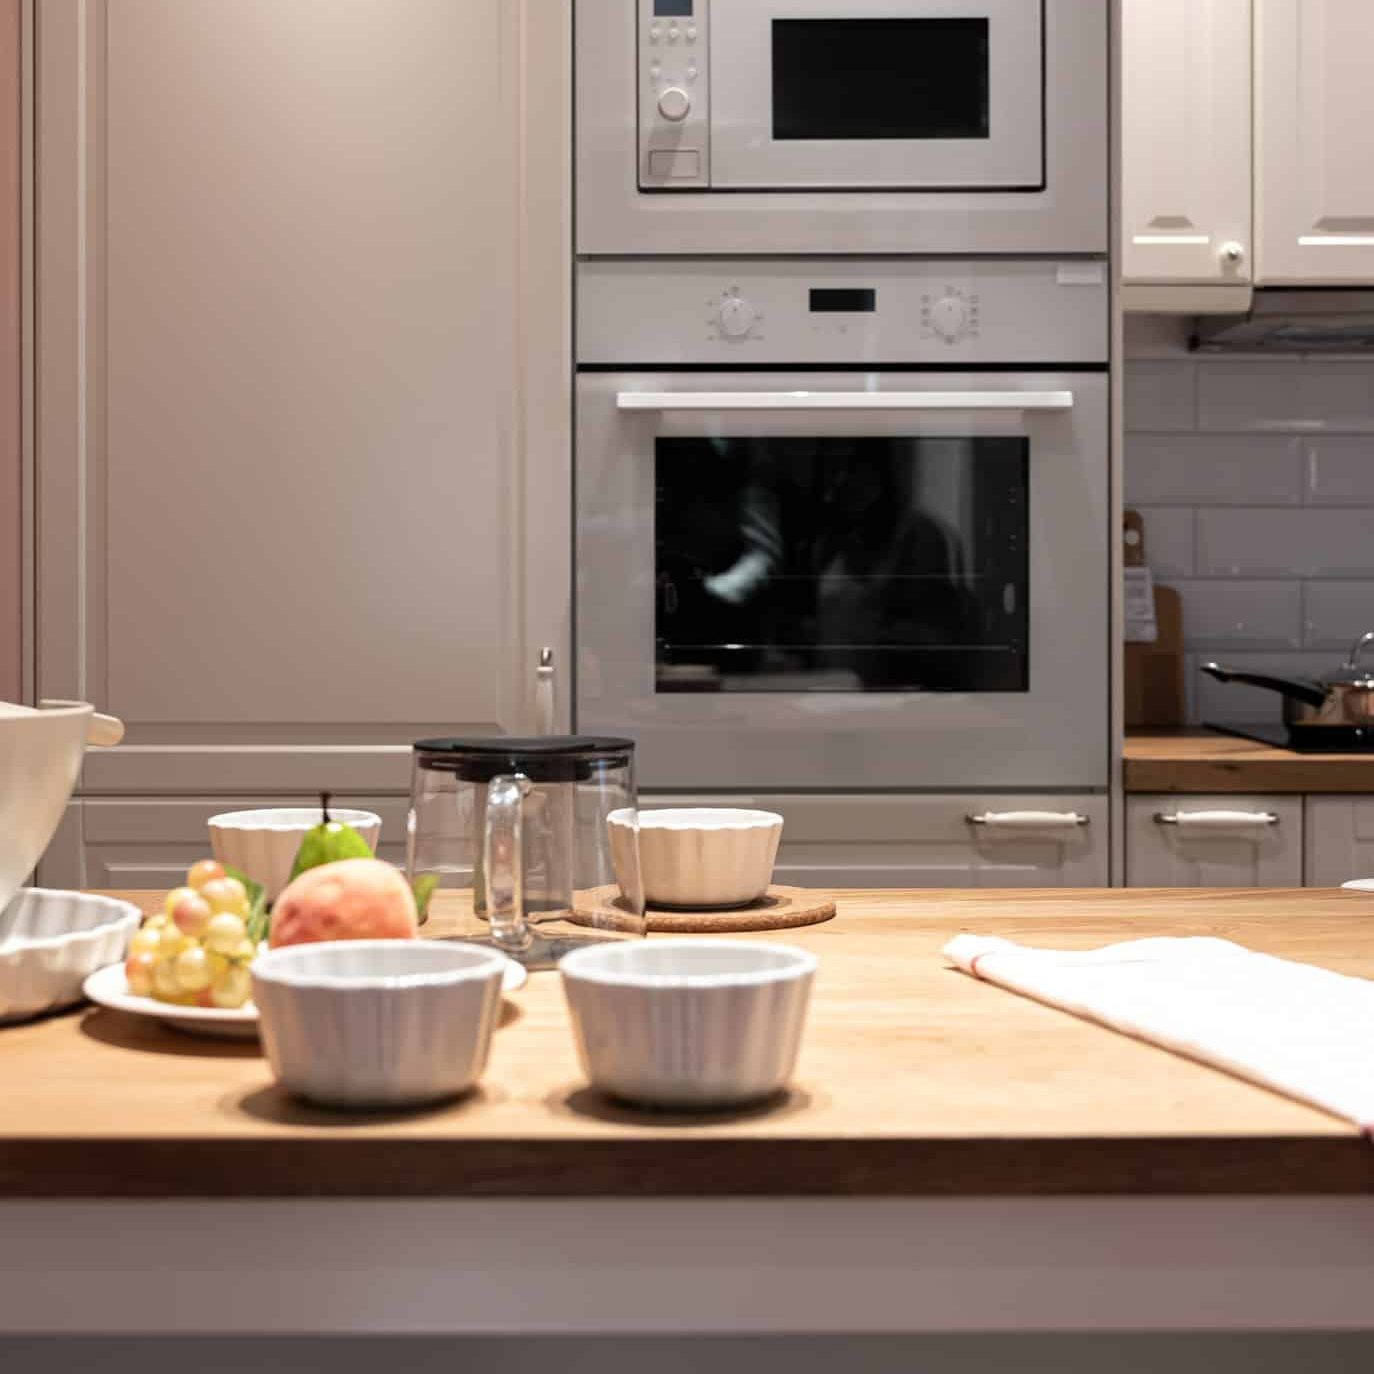 part-kitchen-interior-with-utensils-fruits-table-modern-kitchen